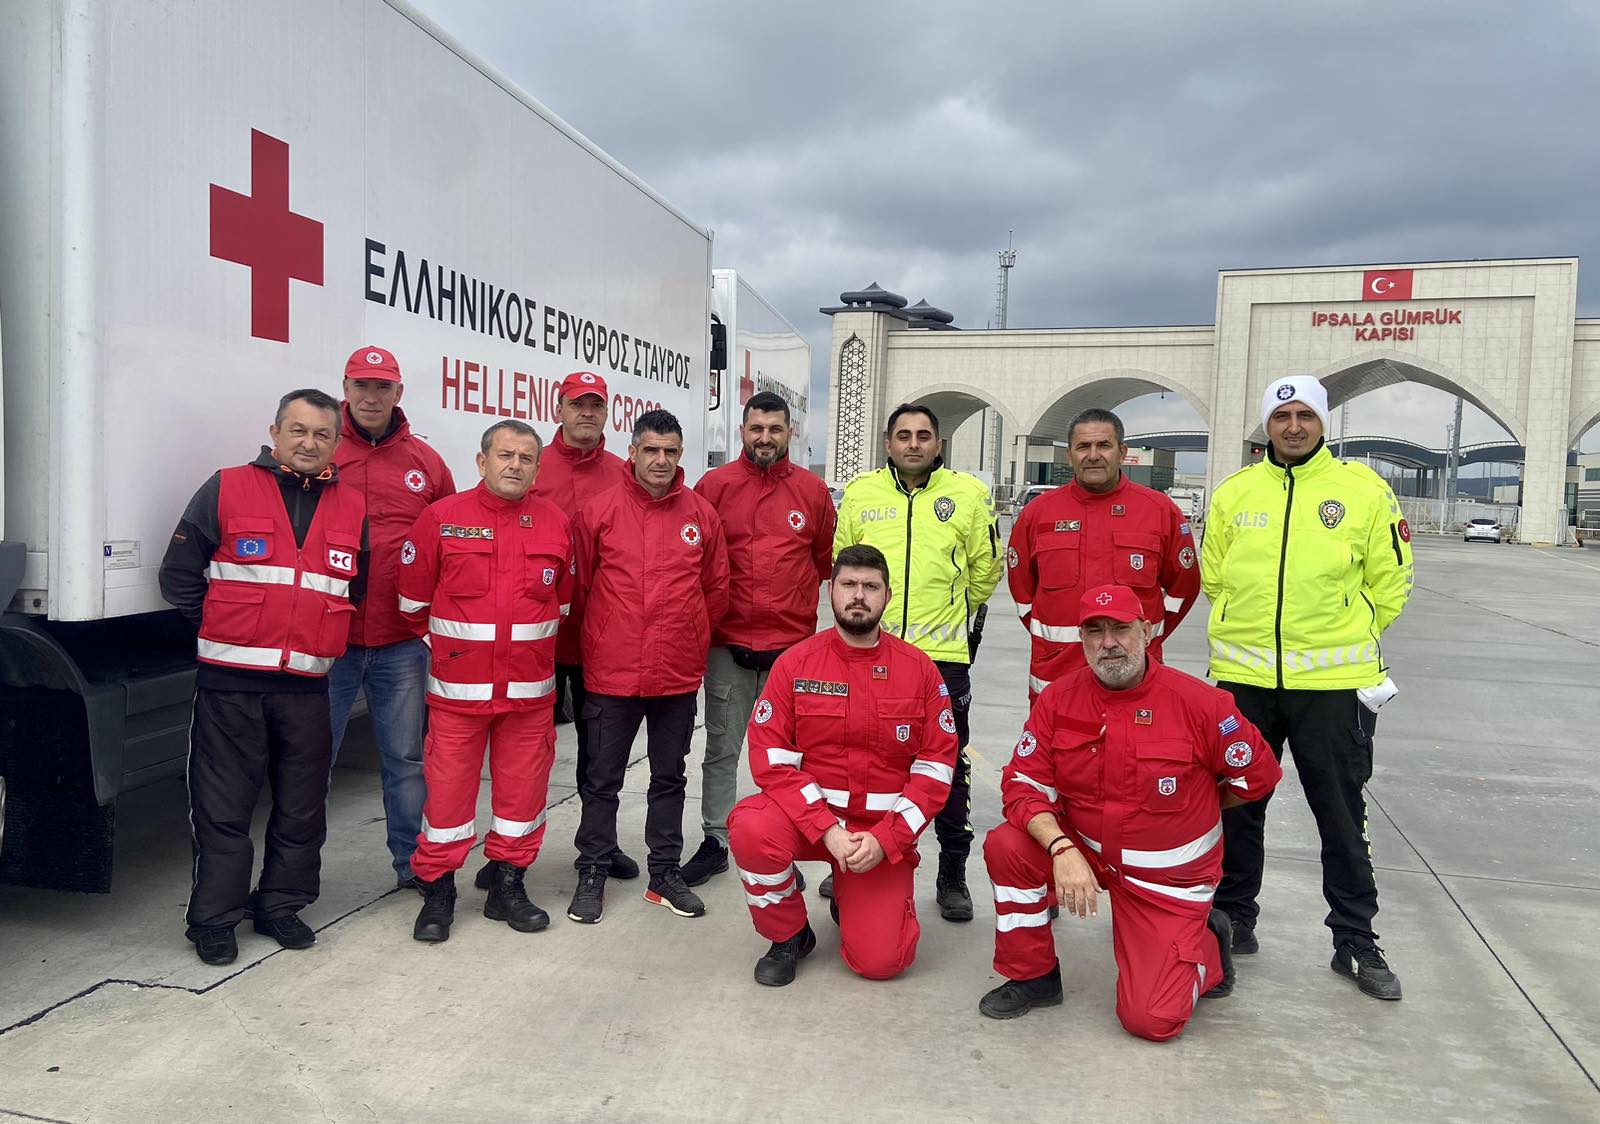 Με χειροκτήματα υποδέχονται τη 2η ανθρωπιστική αποστολή του Ελληνικού Ερυθρού Σταυρού οι Τούρκοι πολίτες